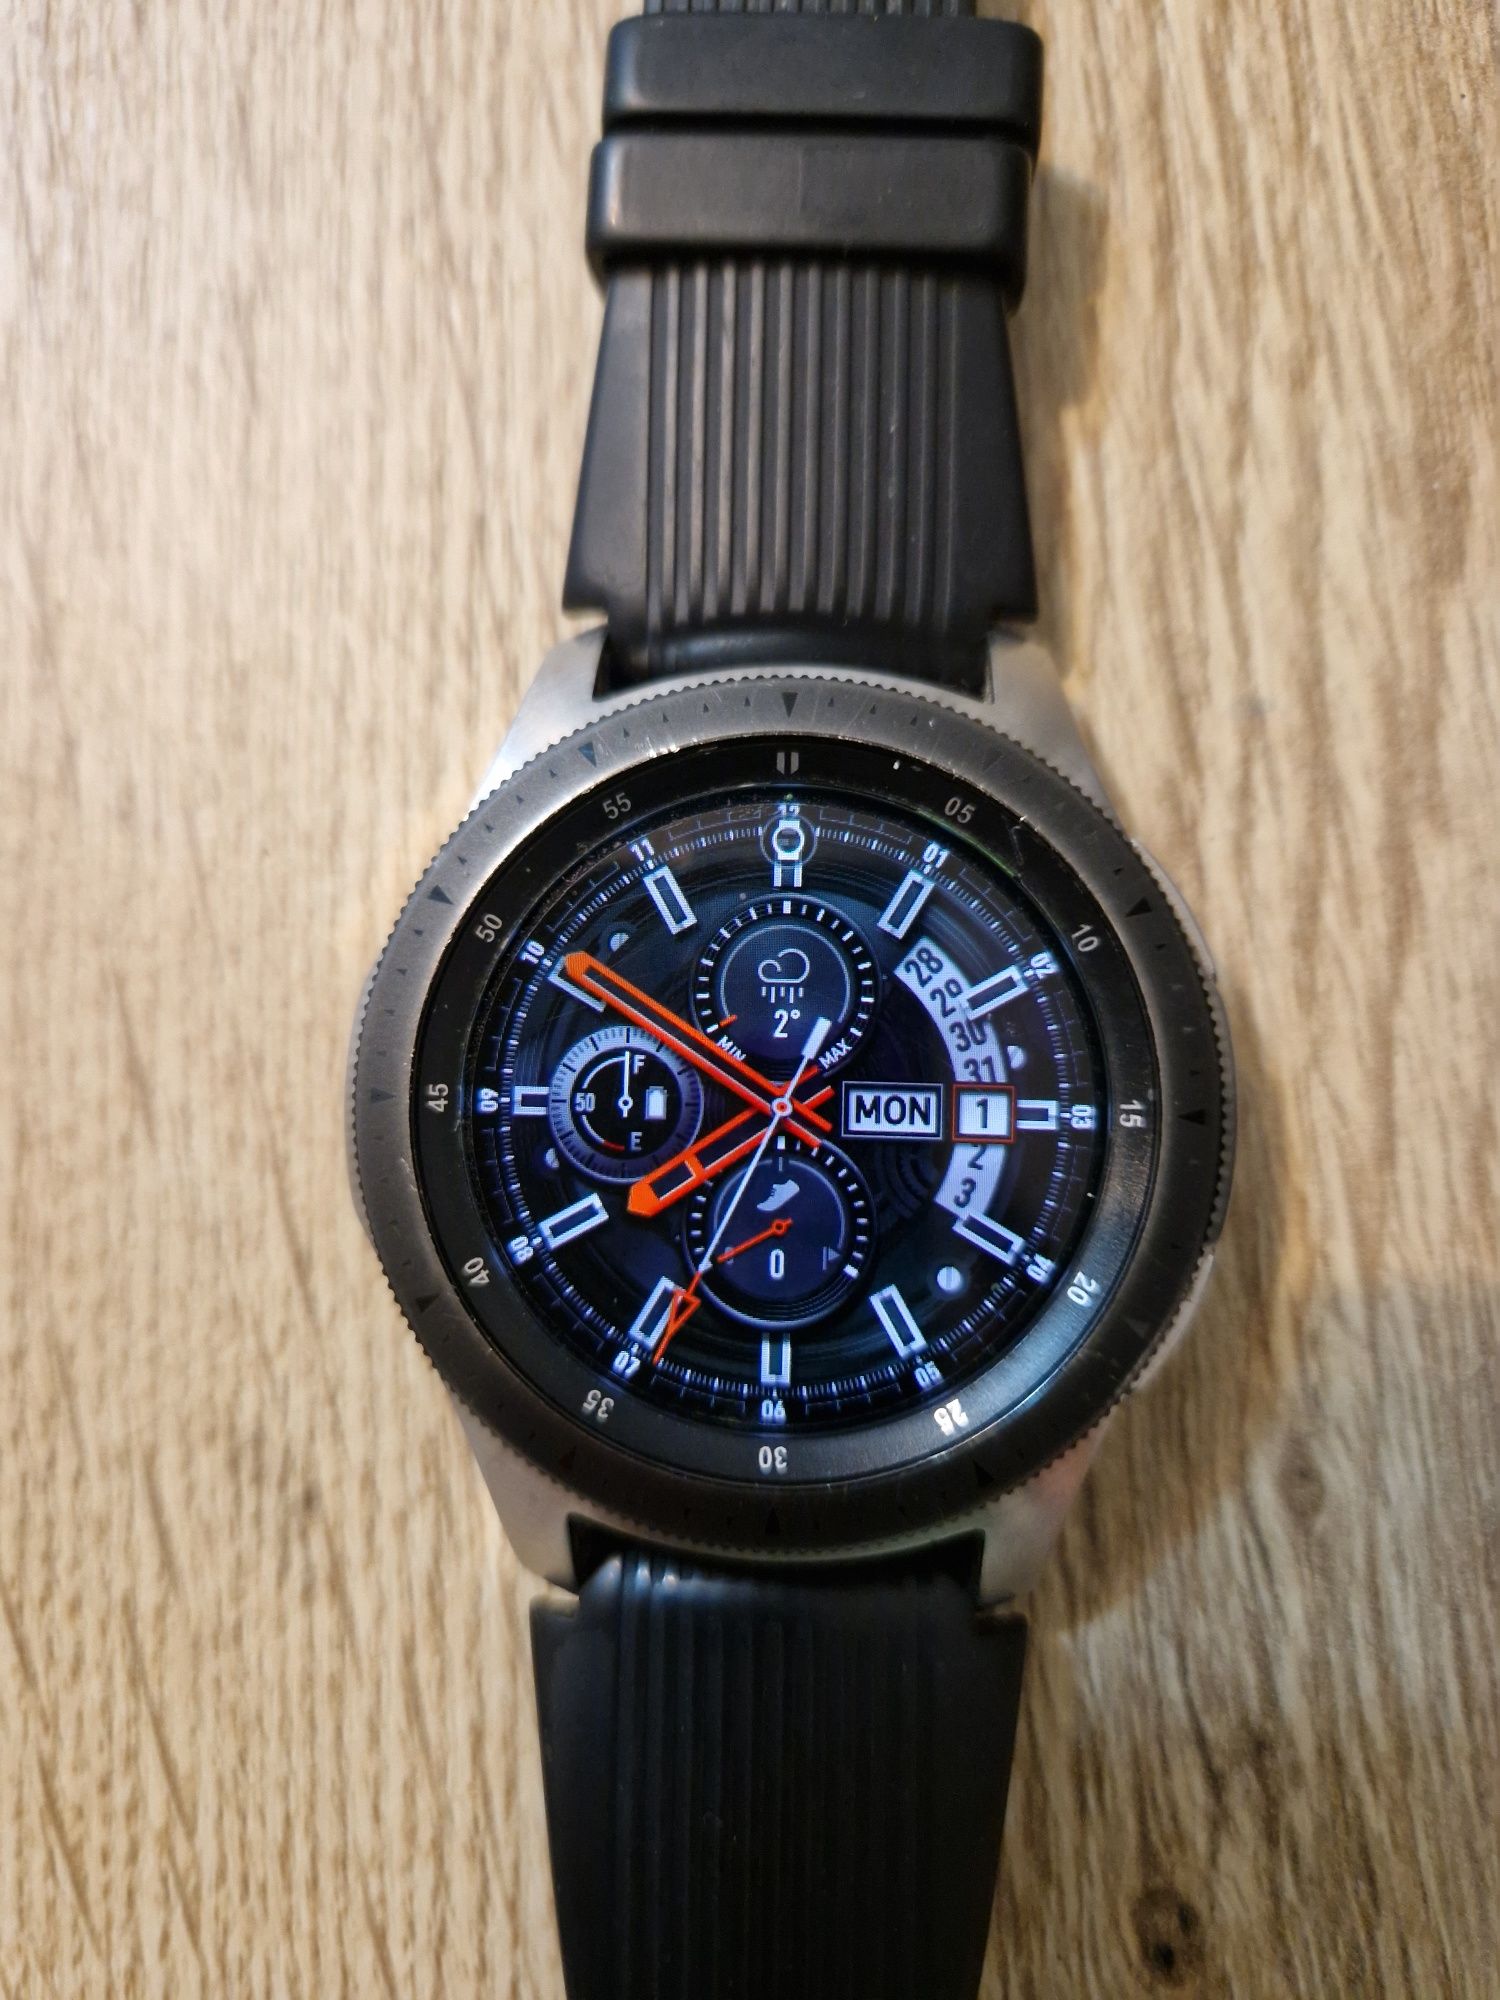 Samsung watch 42mm